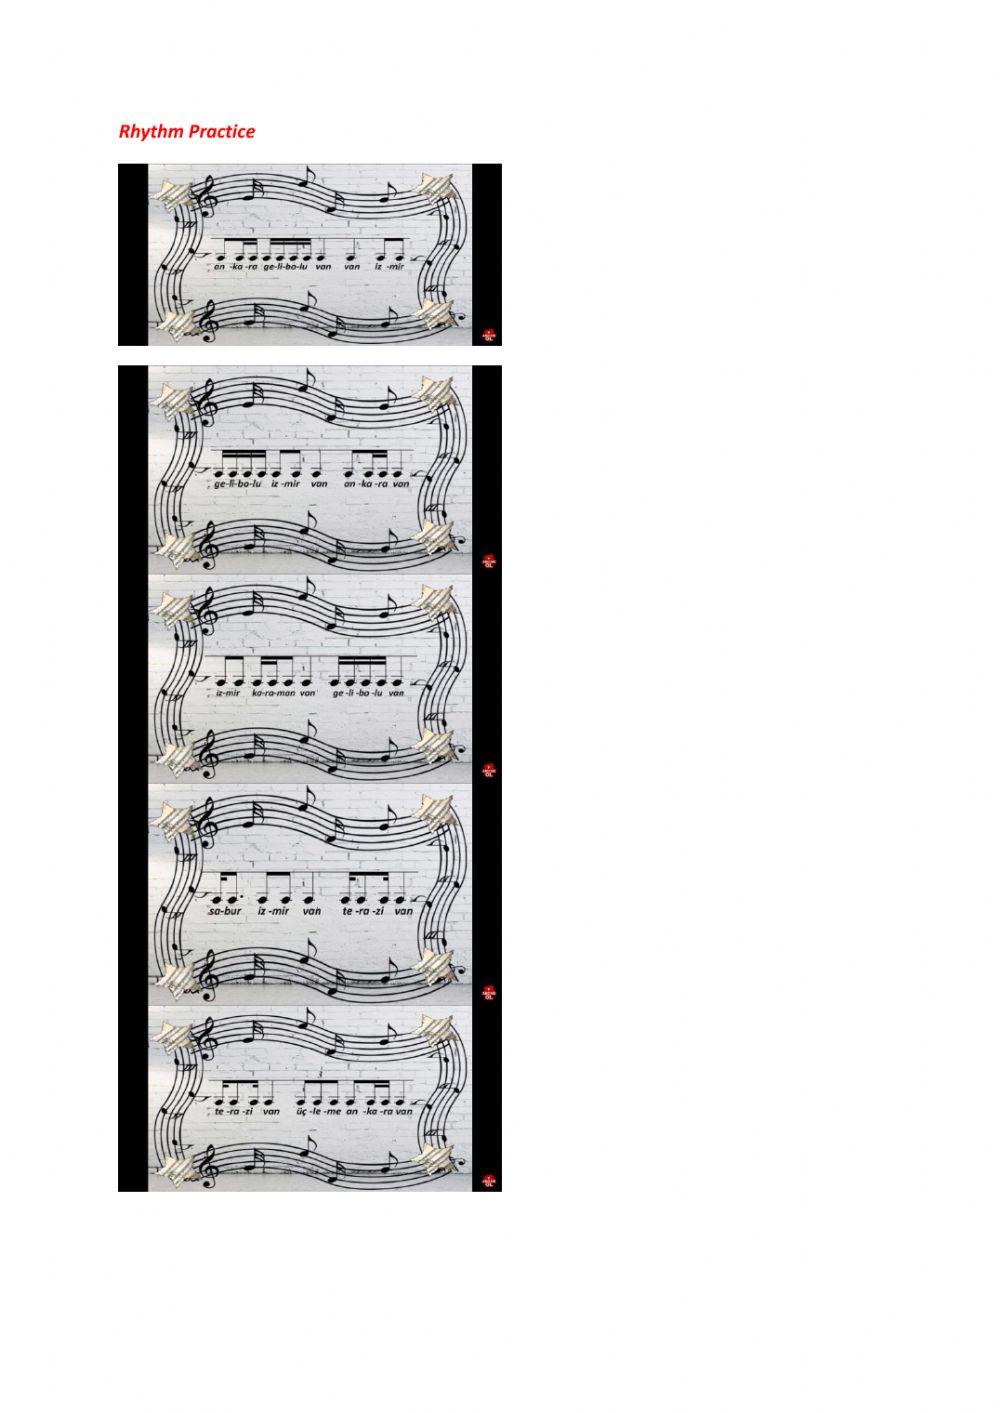 5-8 rhythm patterns